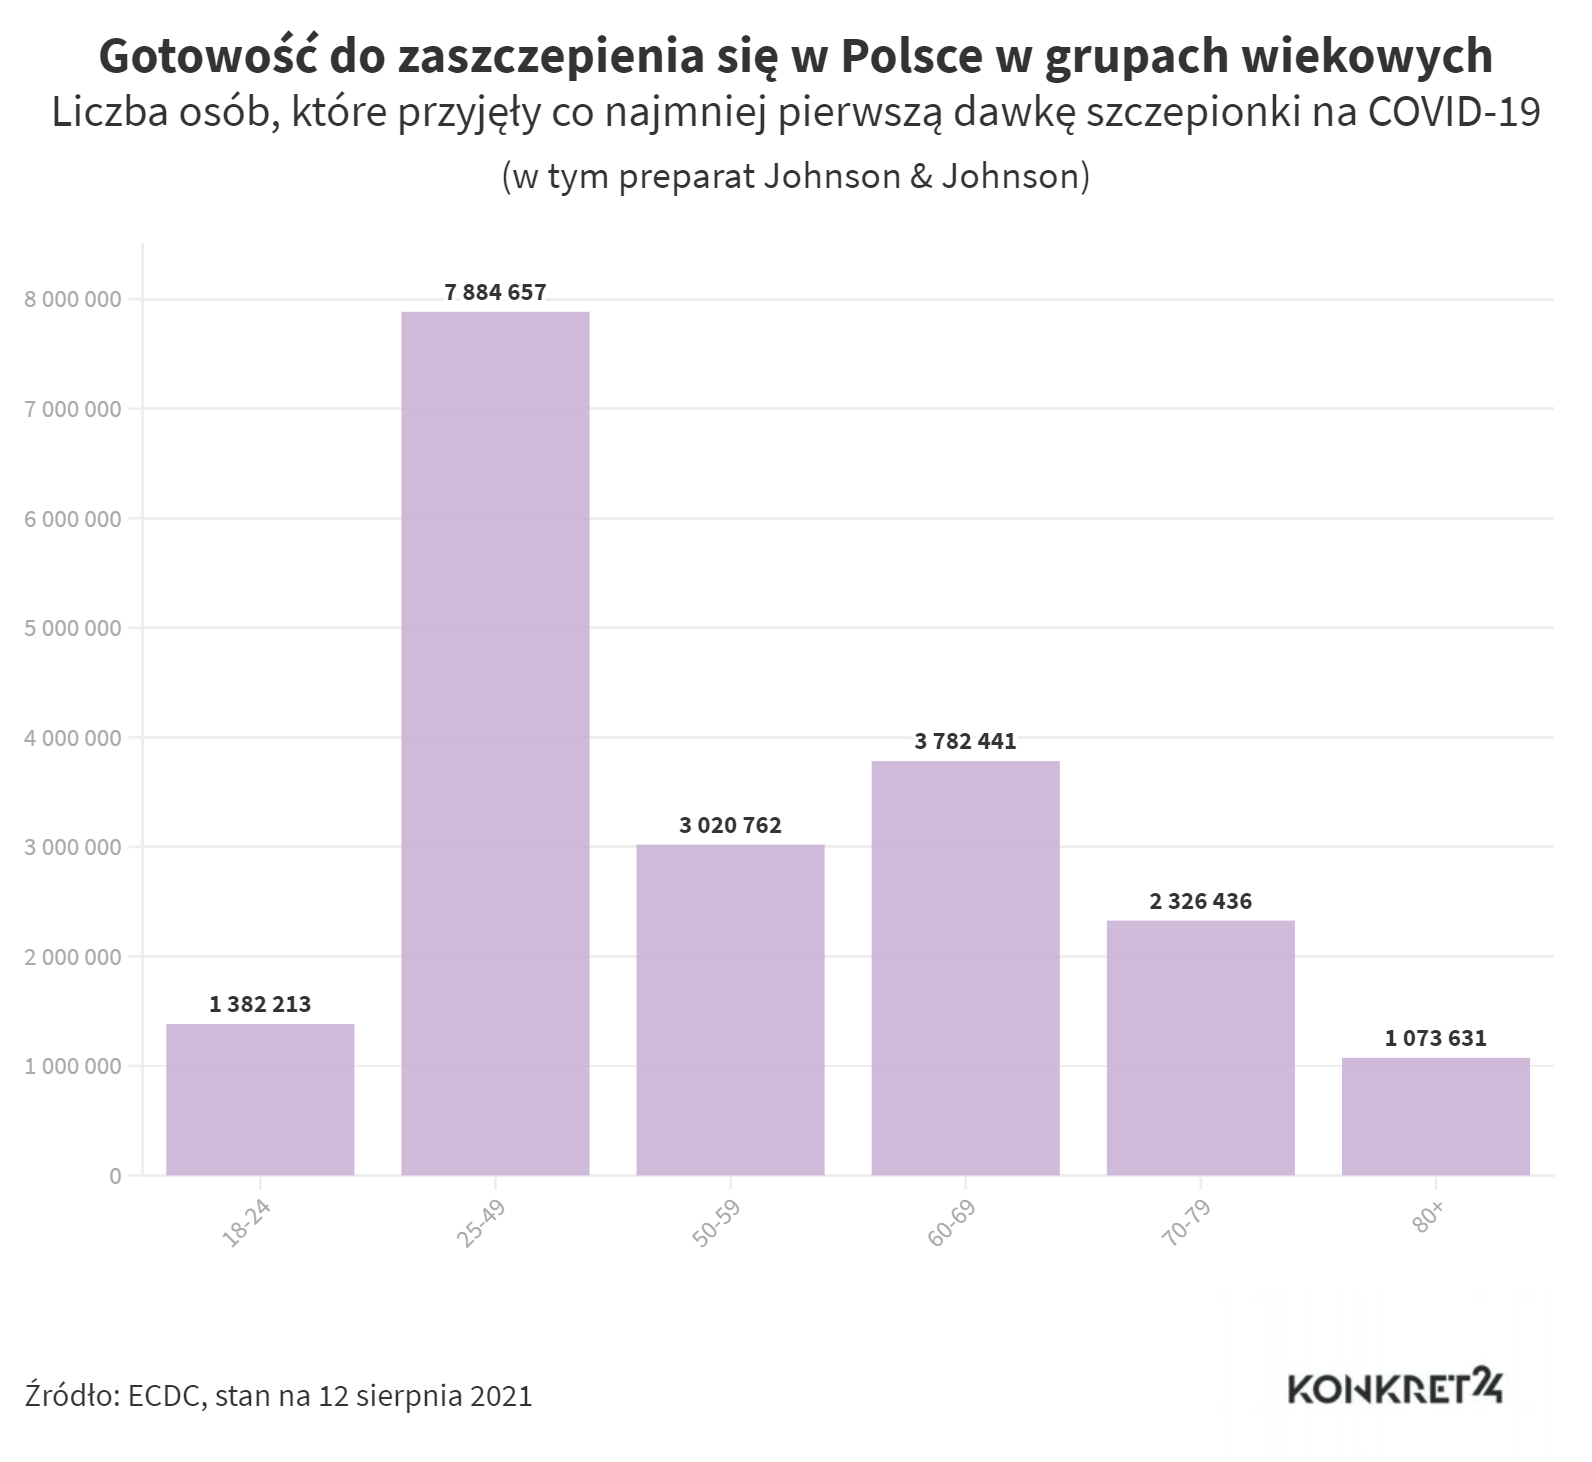 Gotowość do zaszczepienia się w Polsce w grupach wiekowych Liczba osób, które przyjęły co najmniej pierwszą dawkę szczepionki na COVID-19 (stan na 12 sierpnia 2021)